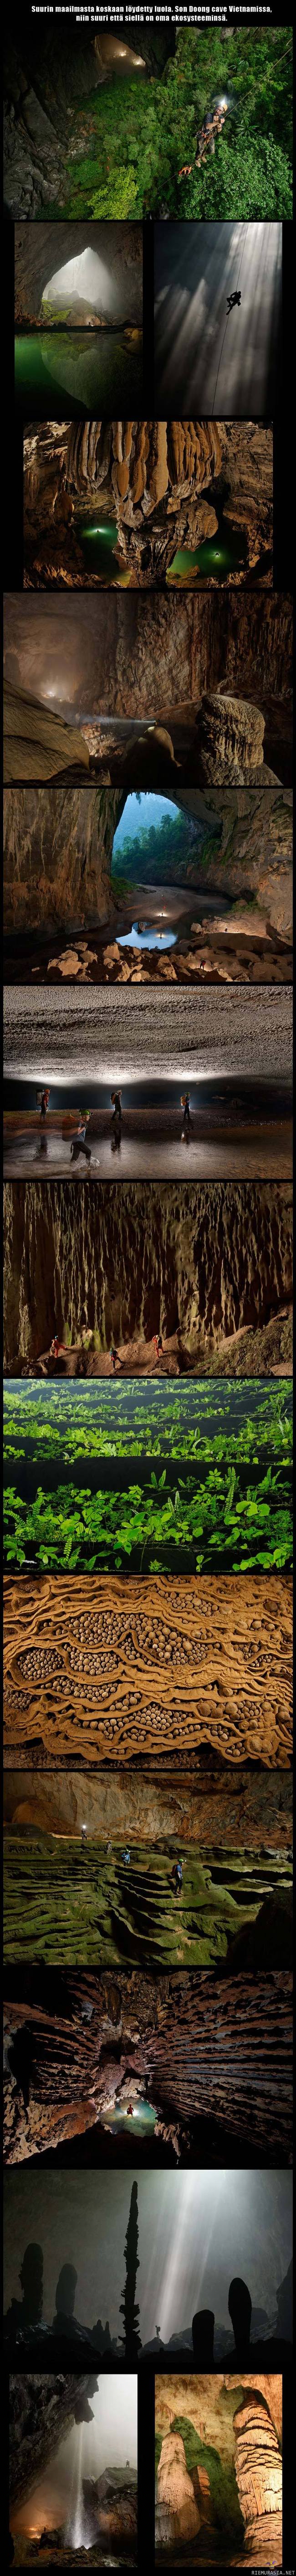 Maailman suurin luola - Song Doong cave Vietnam.